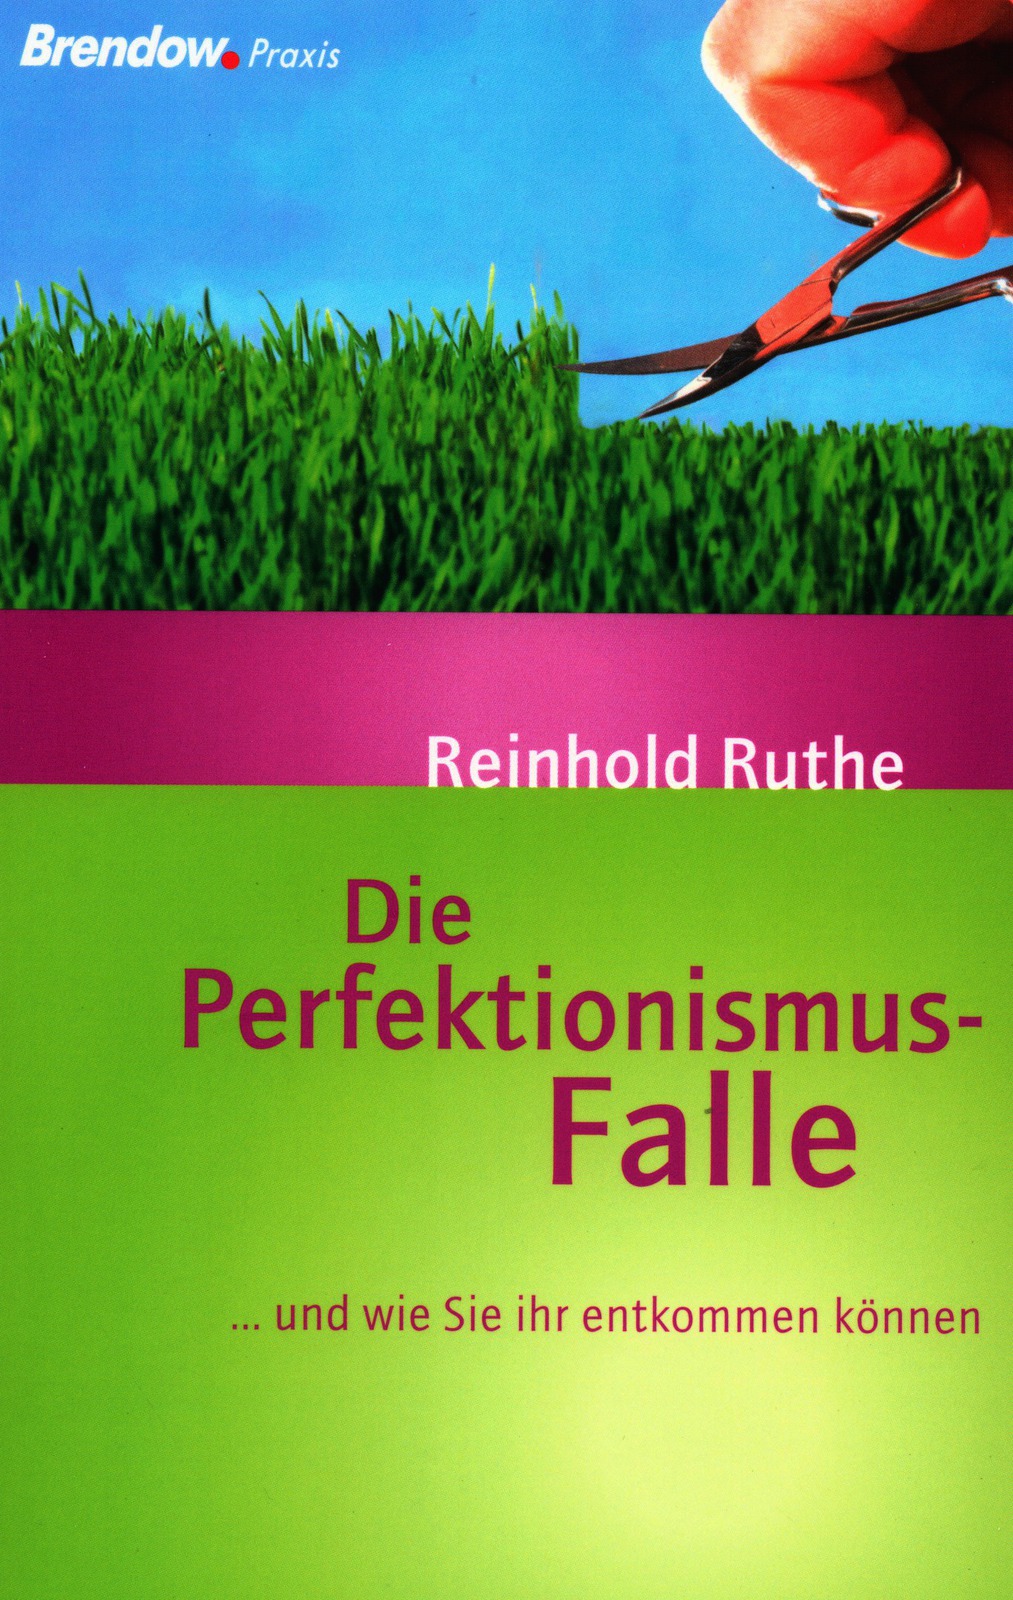 DIE PERFEKTIONISMUS-FALLE